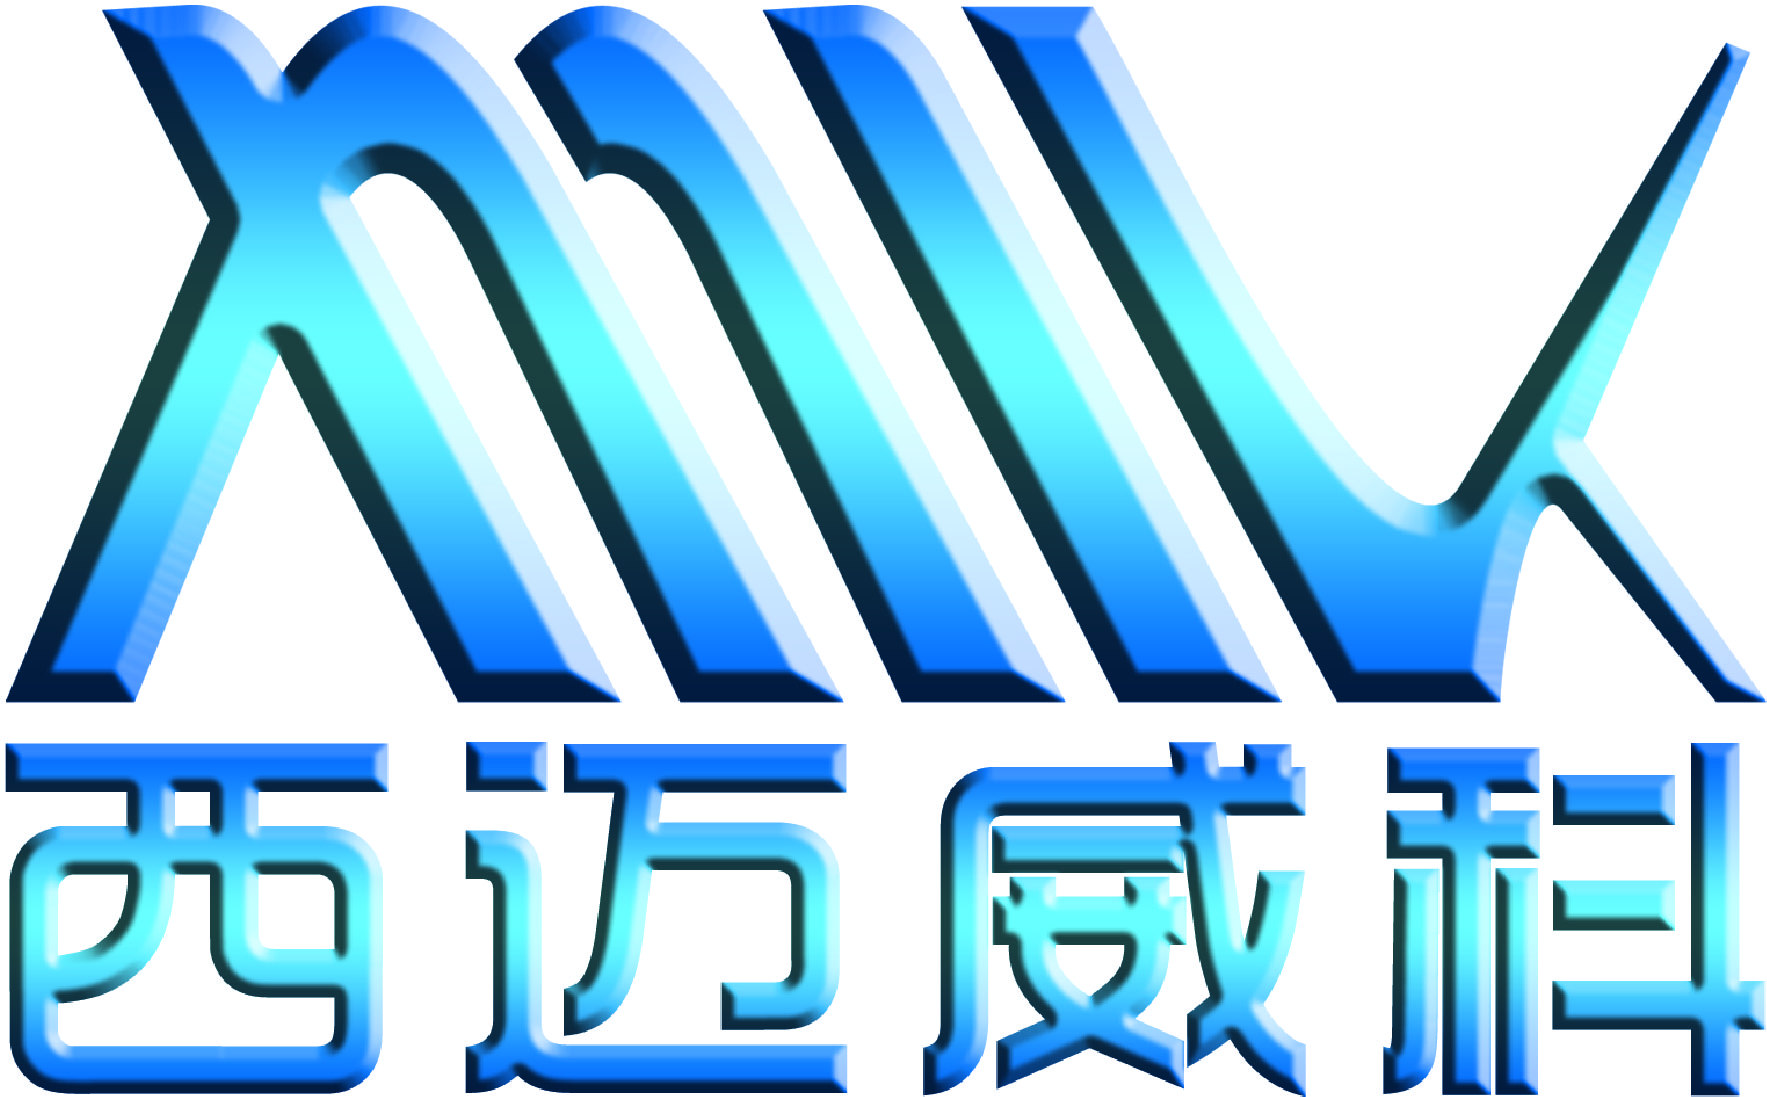 北京西迈威科科技有限公司